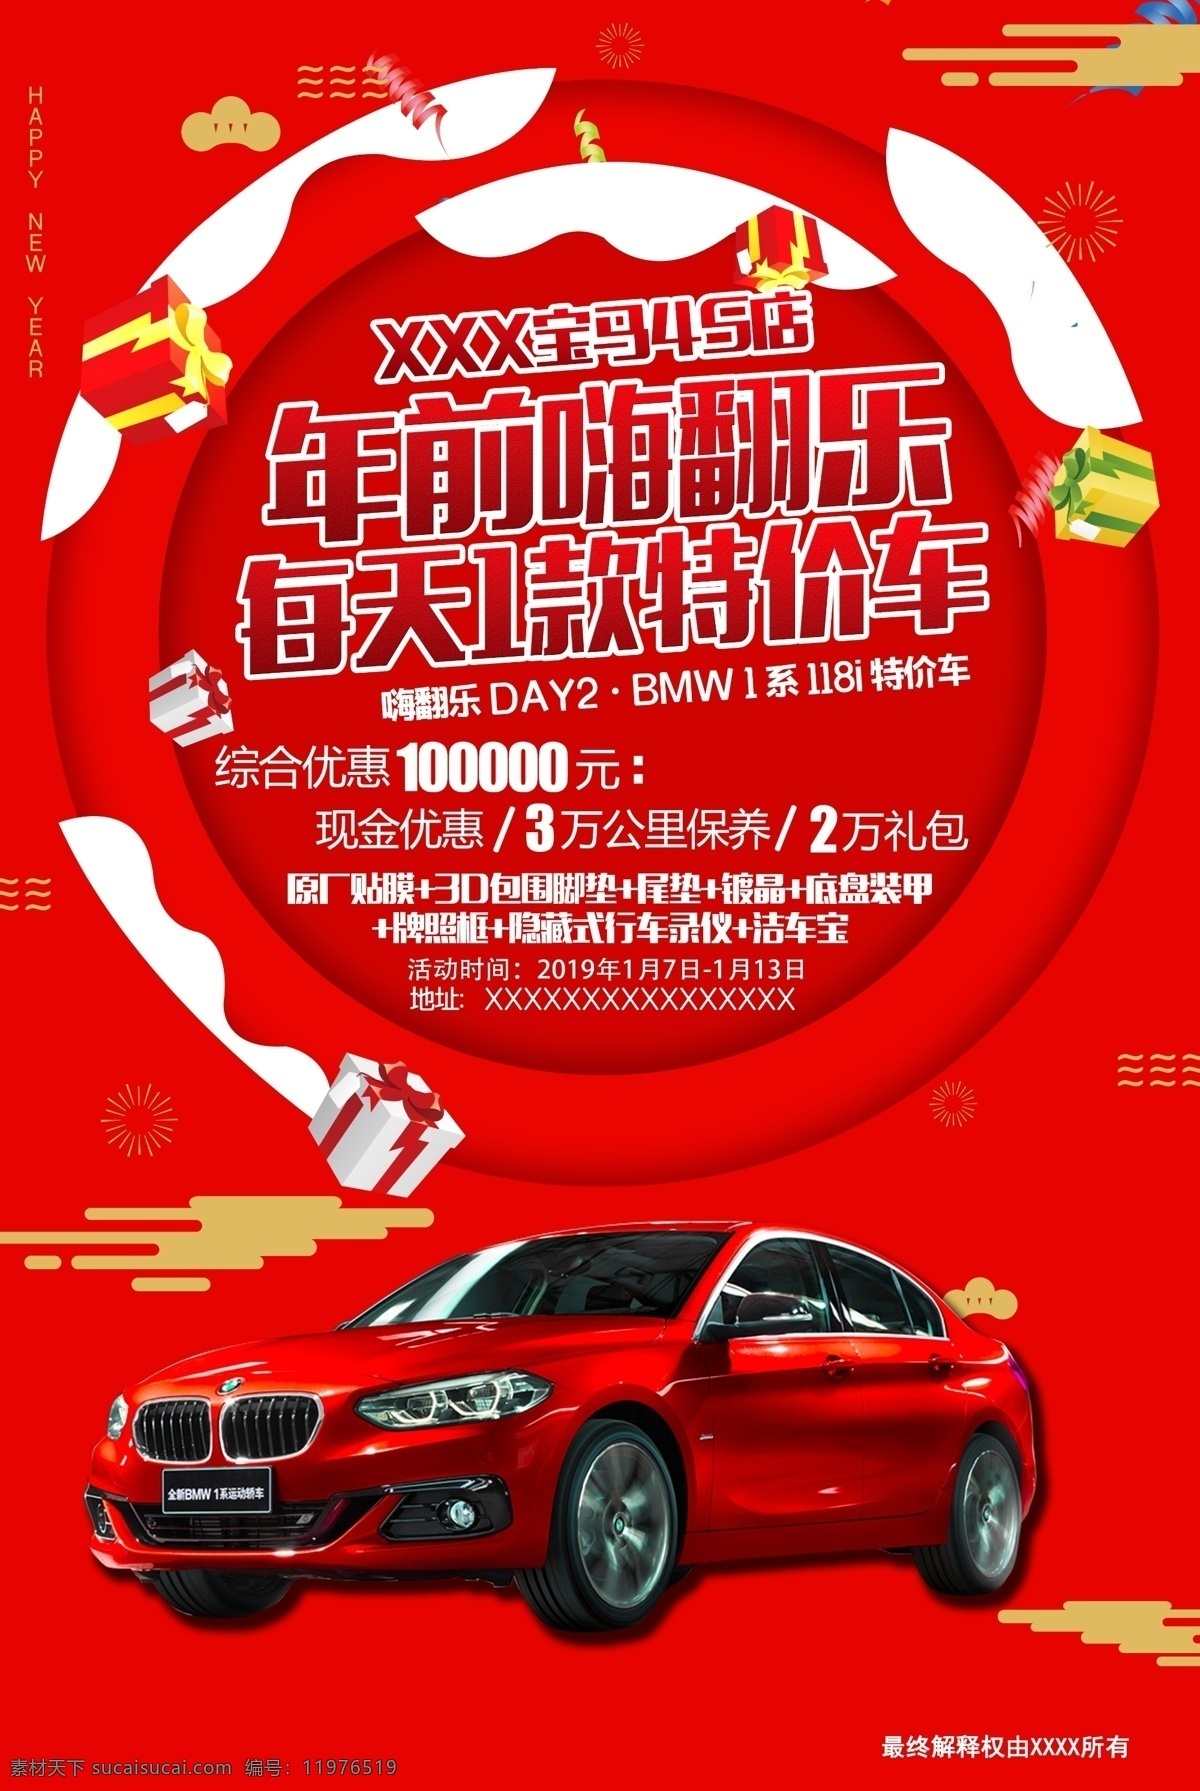 bmw 特价 车 宝马 春节 促销 海报 宝马汽车 年前促销 春节海报 朋友圈宣传图 分层